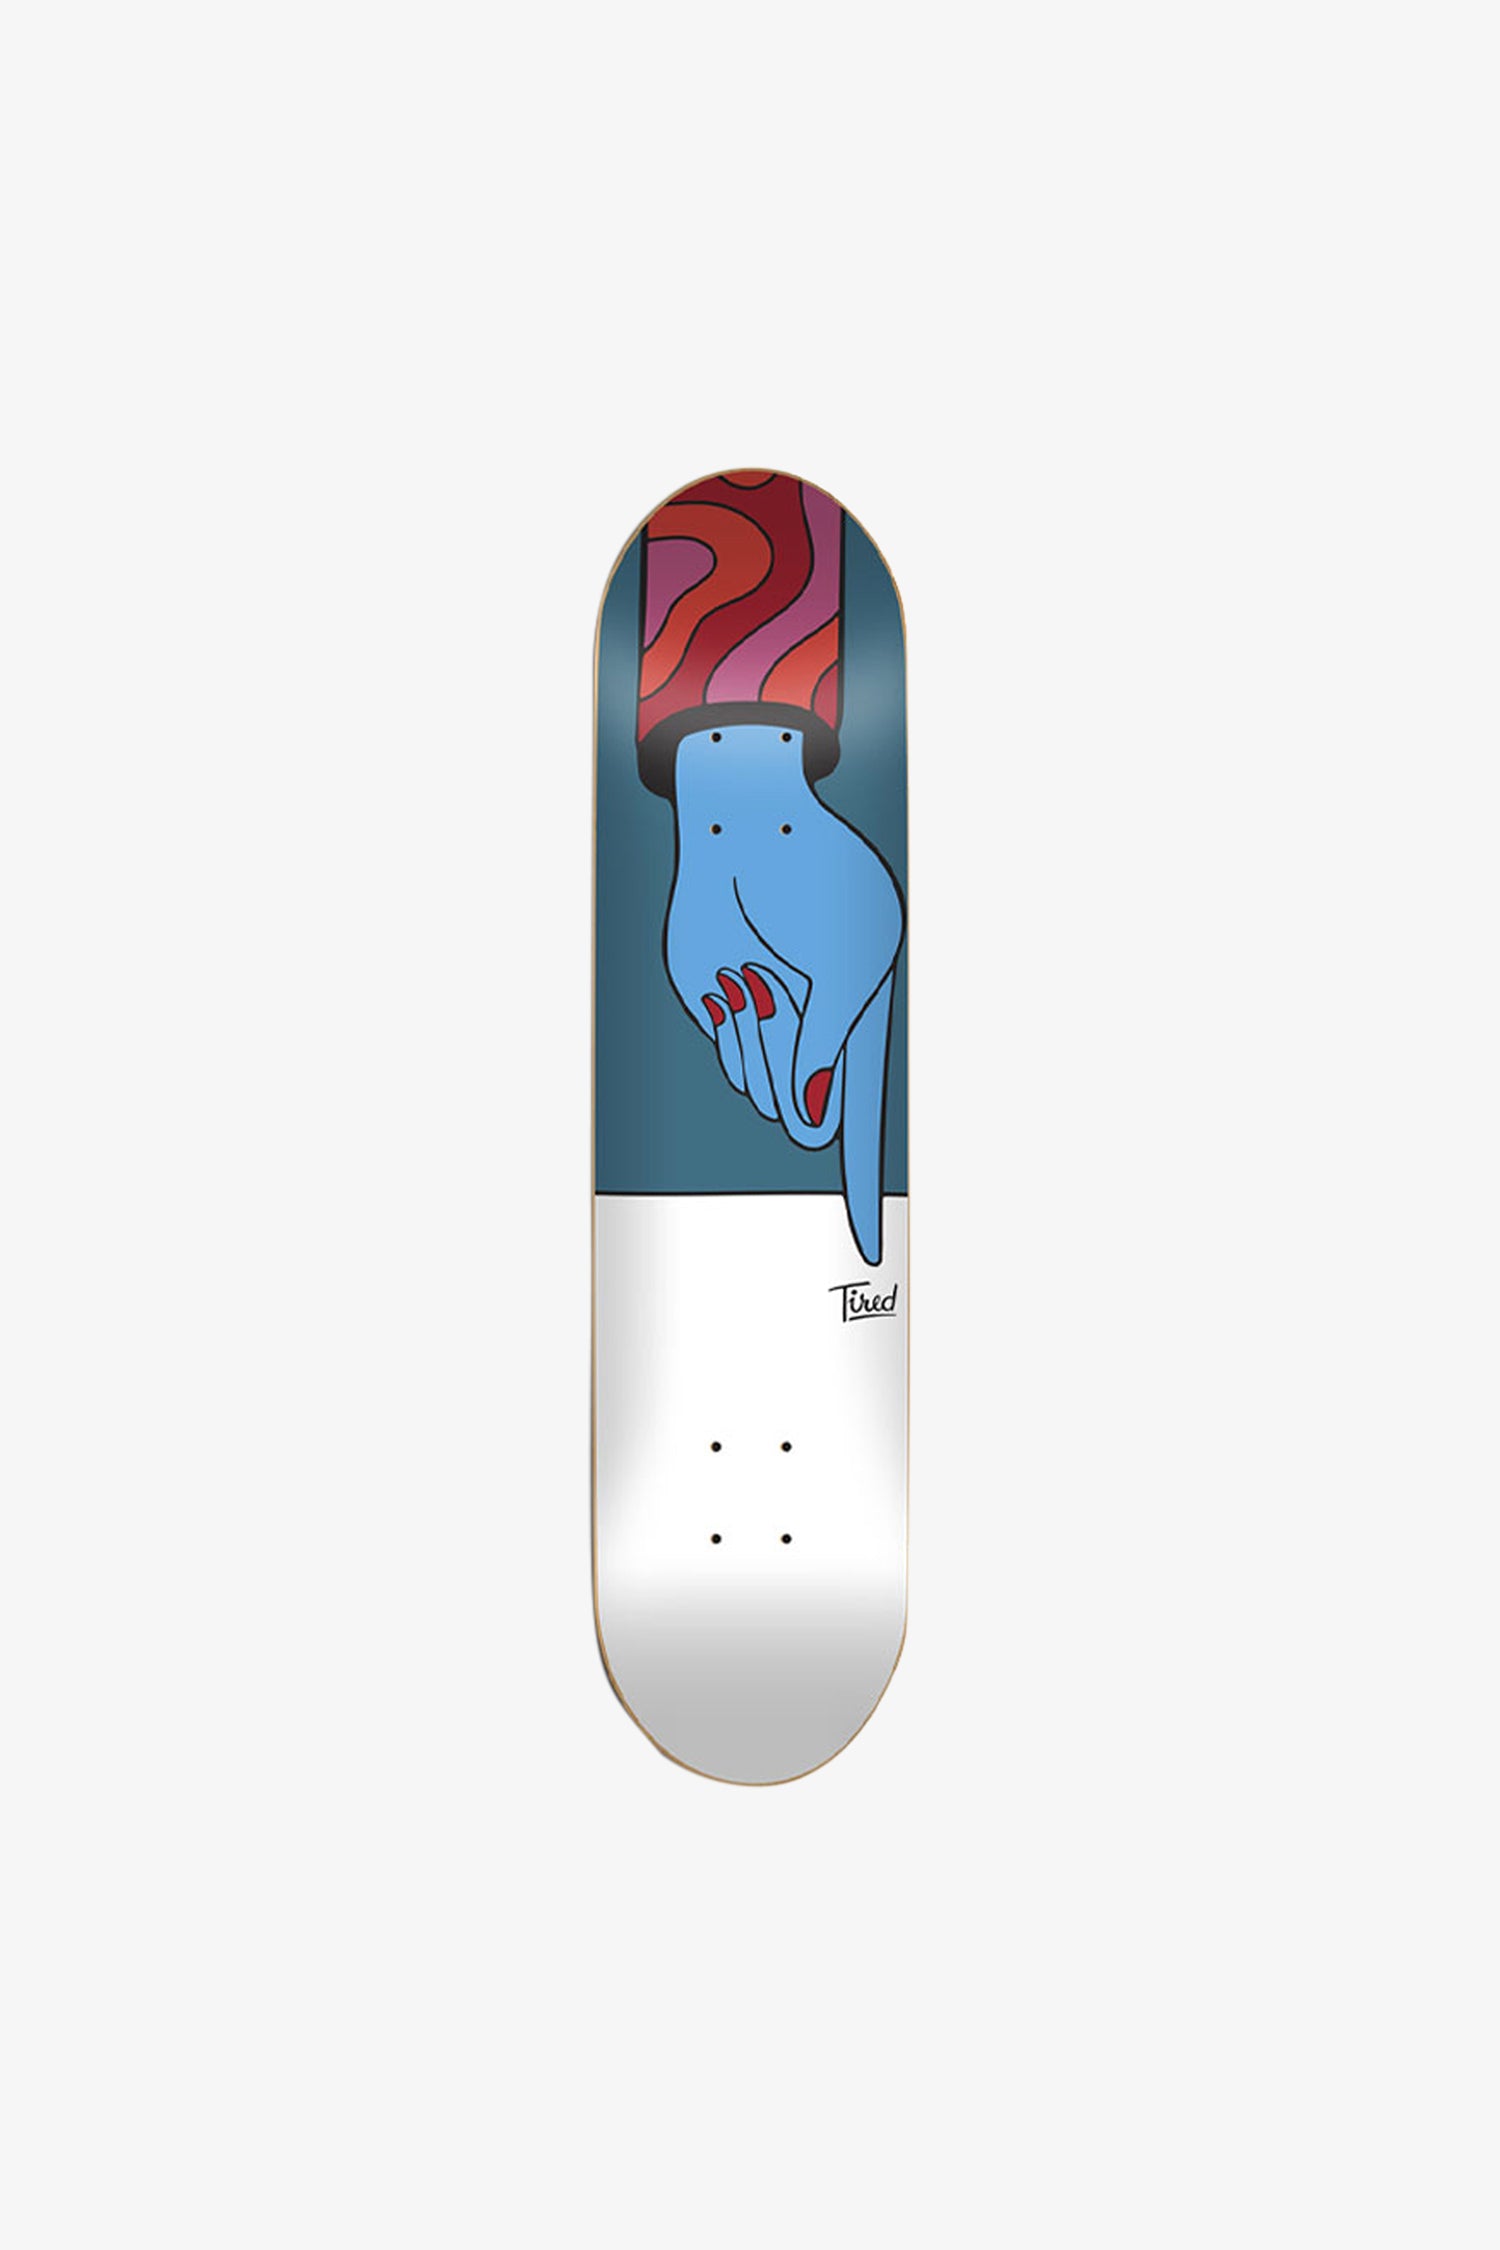 Selectshop FRAME - TIRED Finger Regular Deck Skateboards Dubai